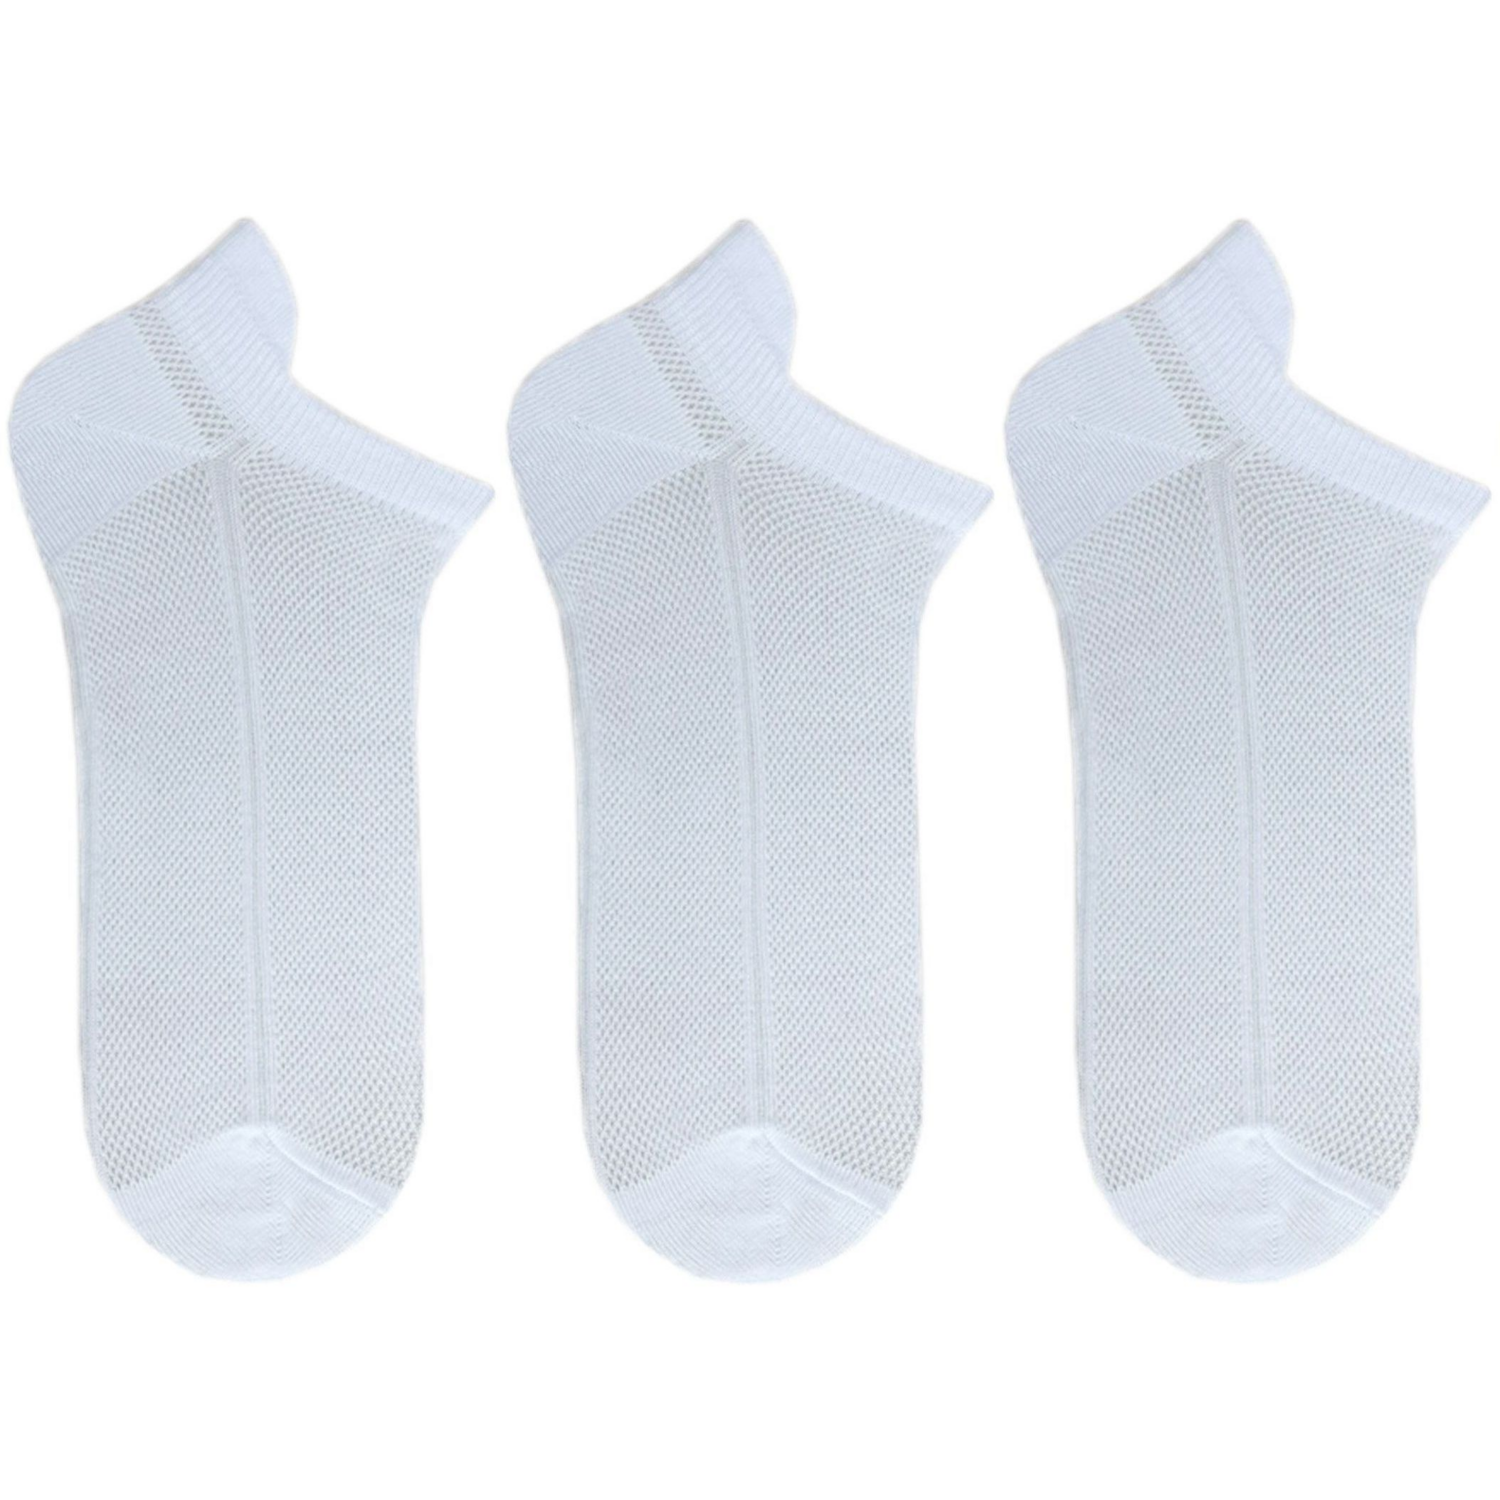 Набір жіночих шкарпеток Premier Socks 36-40 3 пари білі (4820163319247)фото